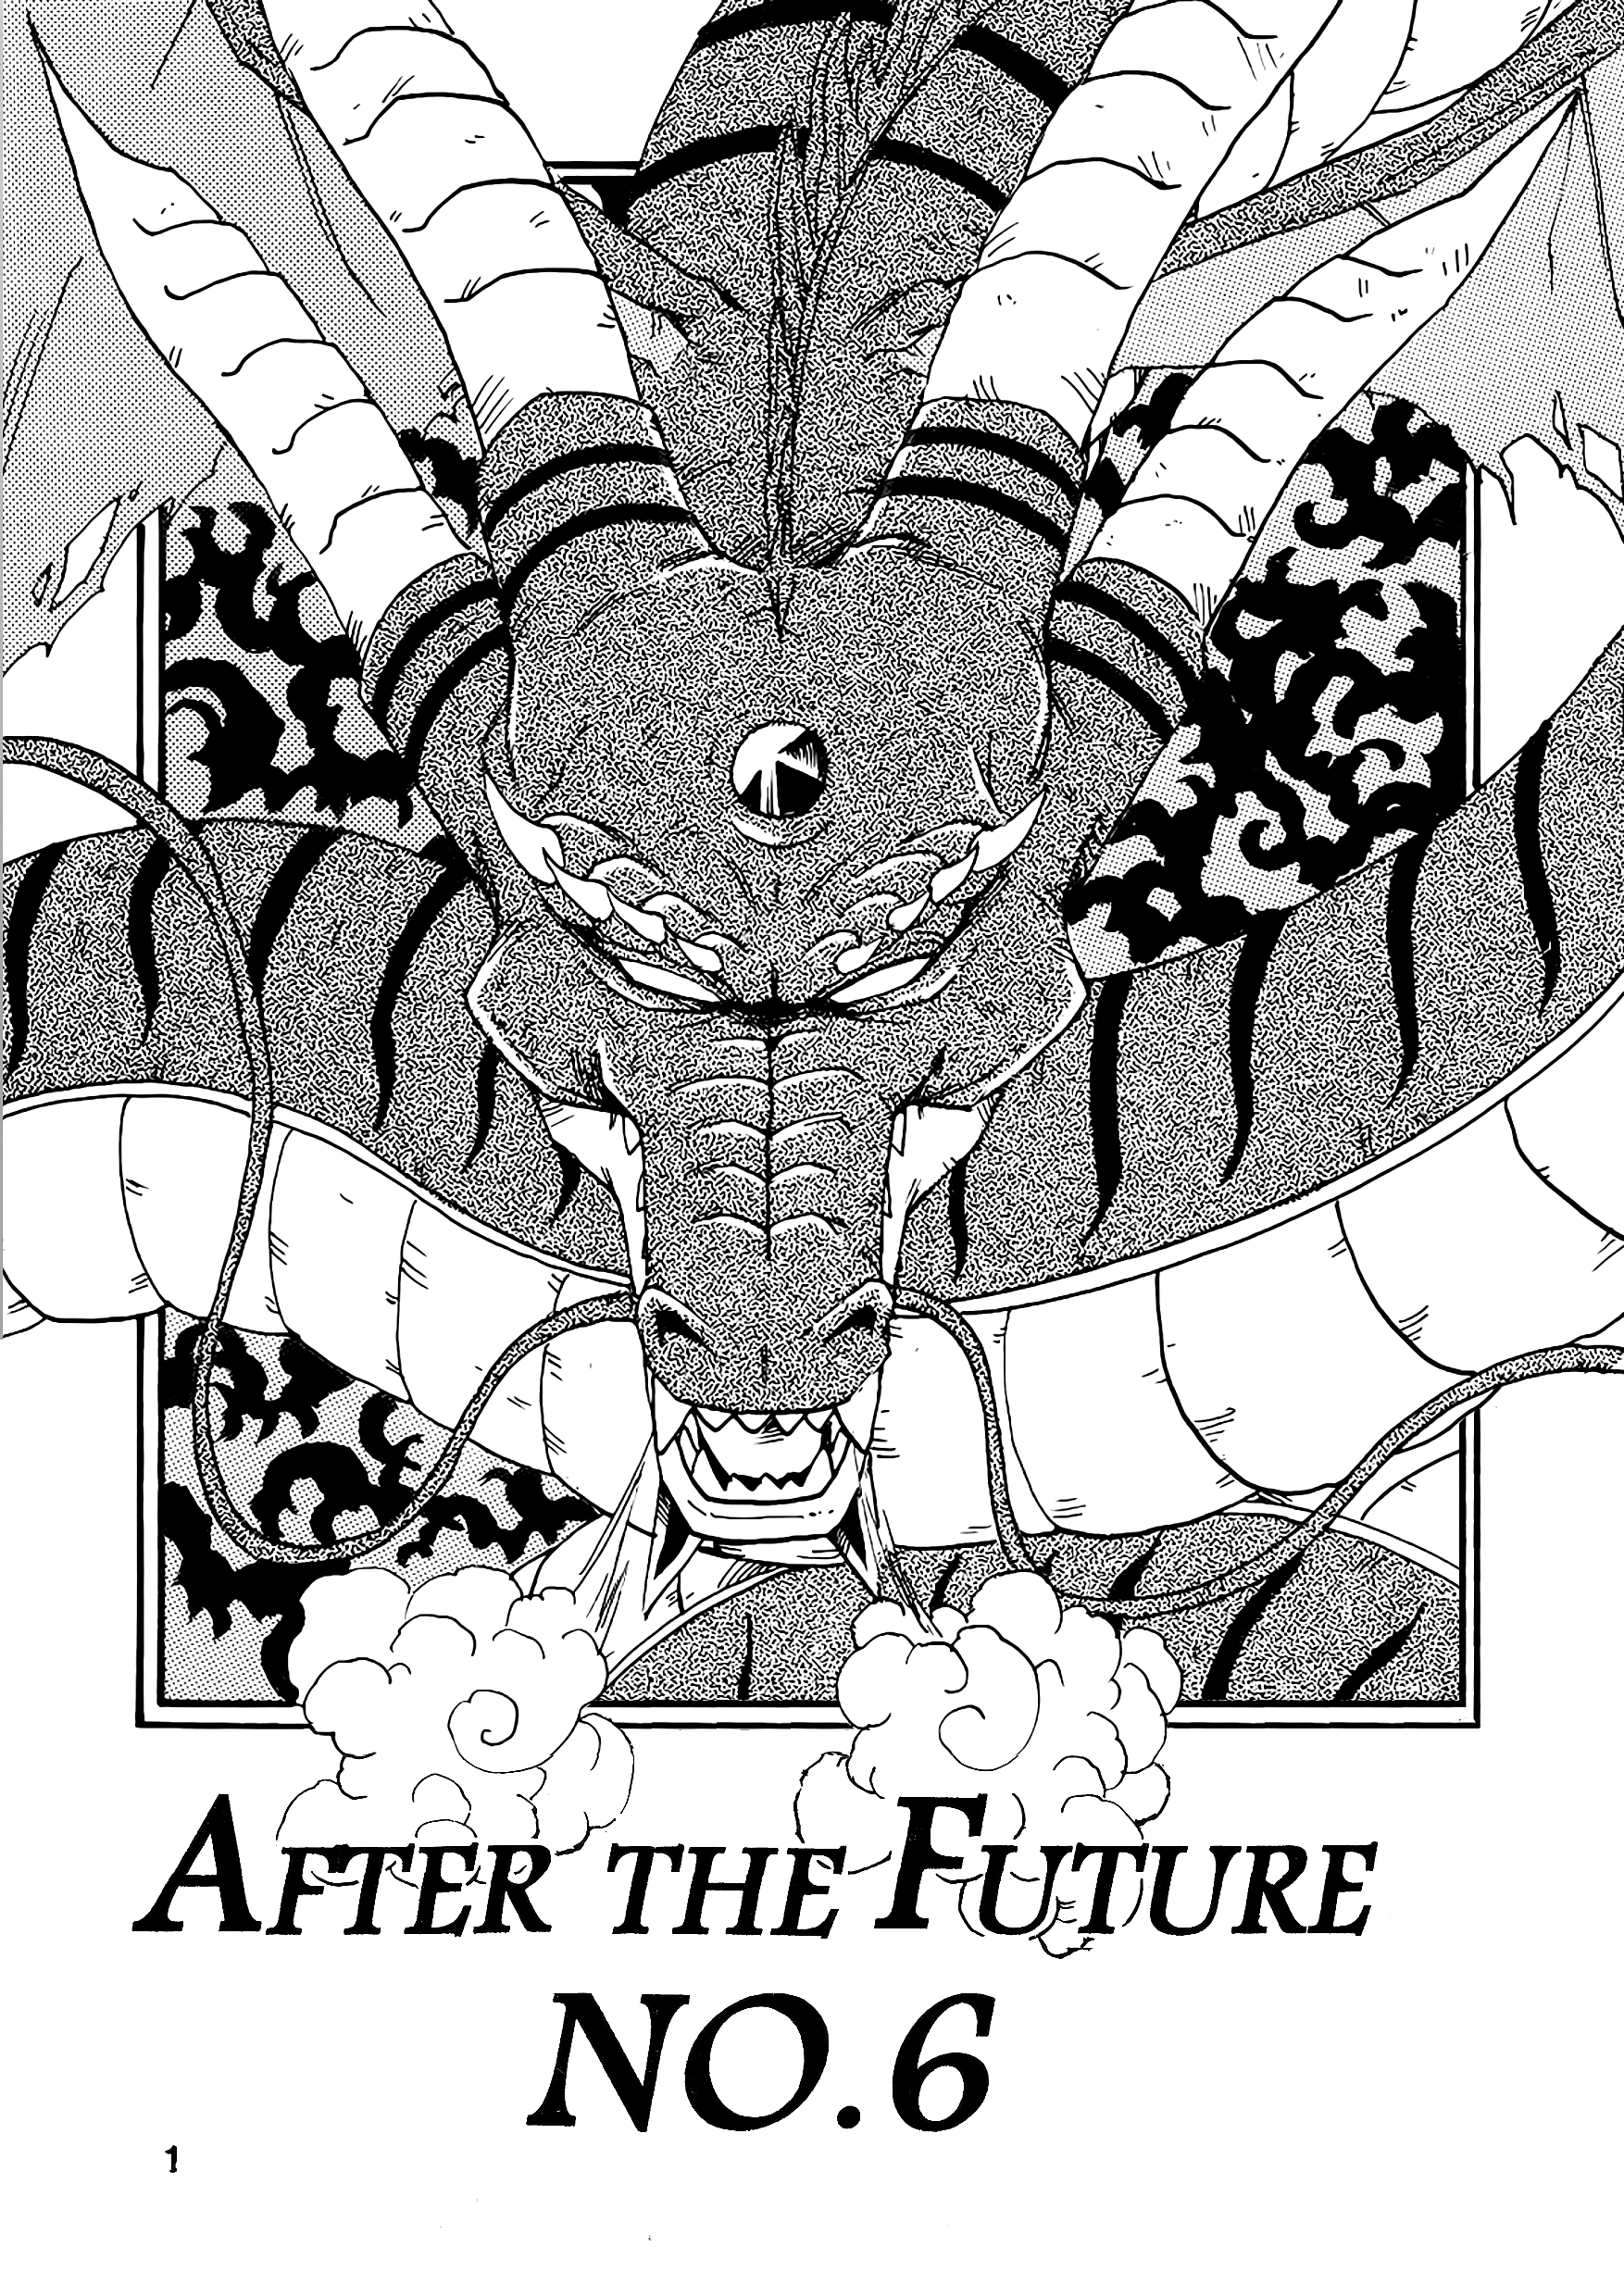 Dragon Ball Af (Young Jijii) (Doujinshi) - Page 2